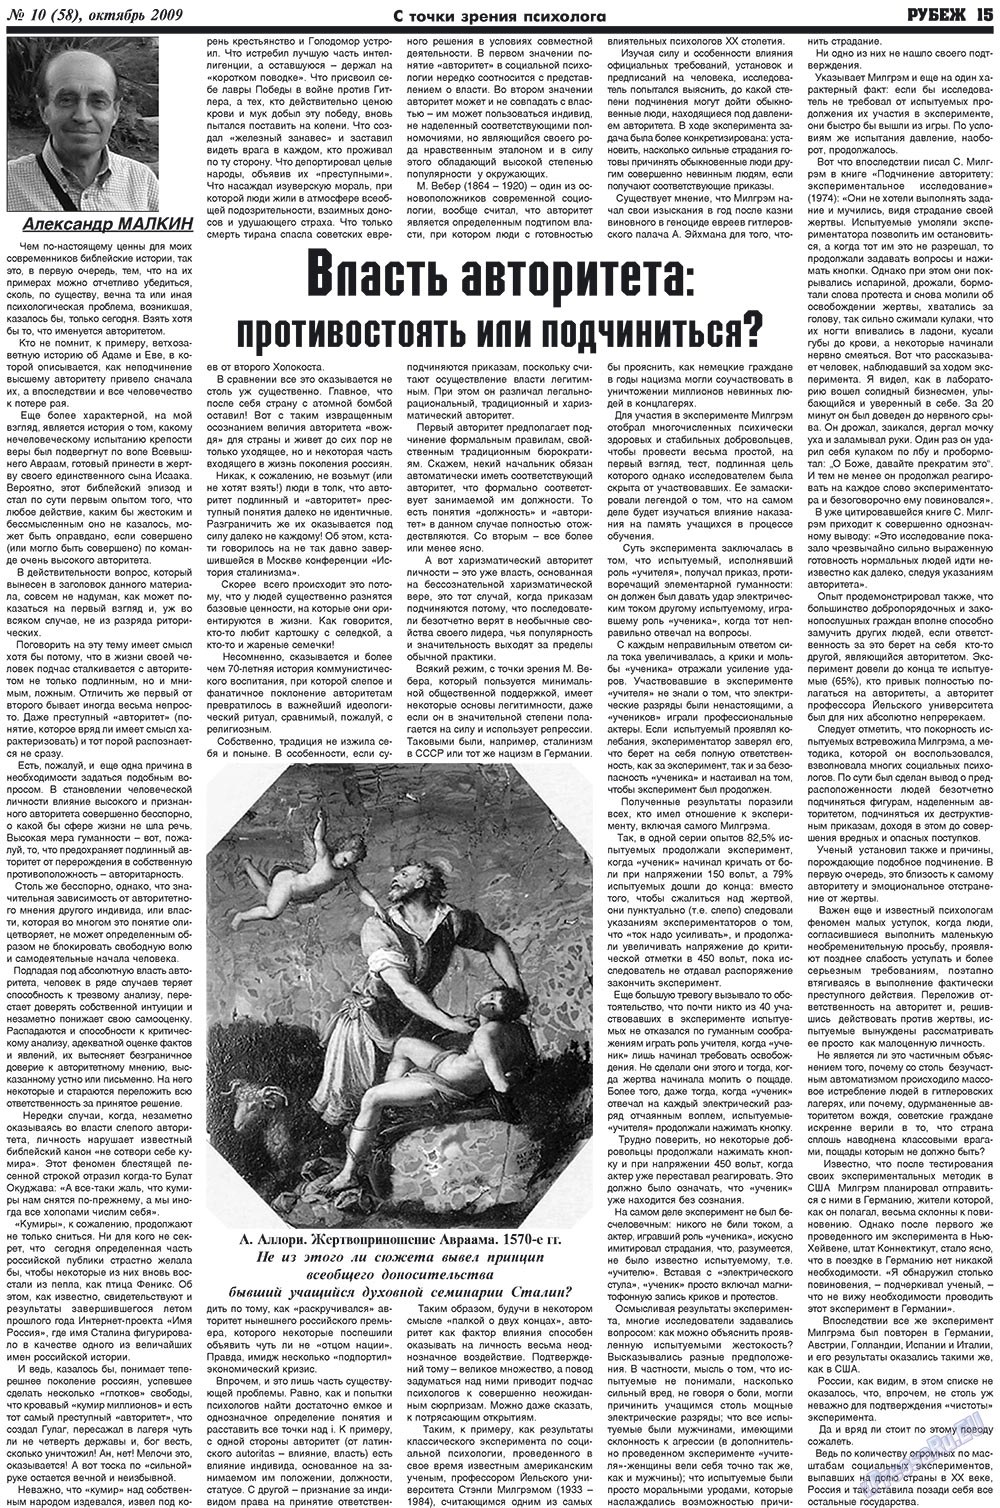 Рубеж (газета). 2009 год, номер 10, стр. 15